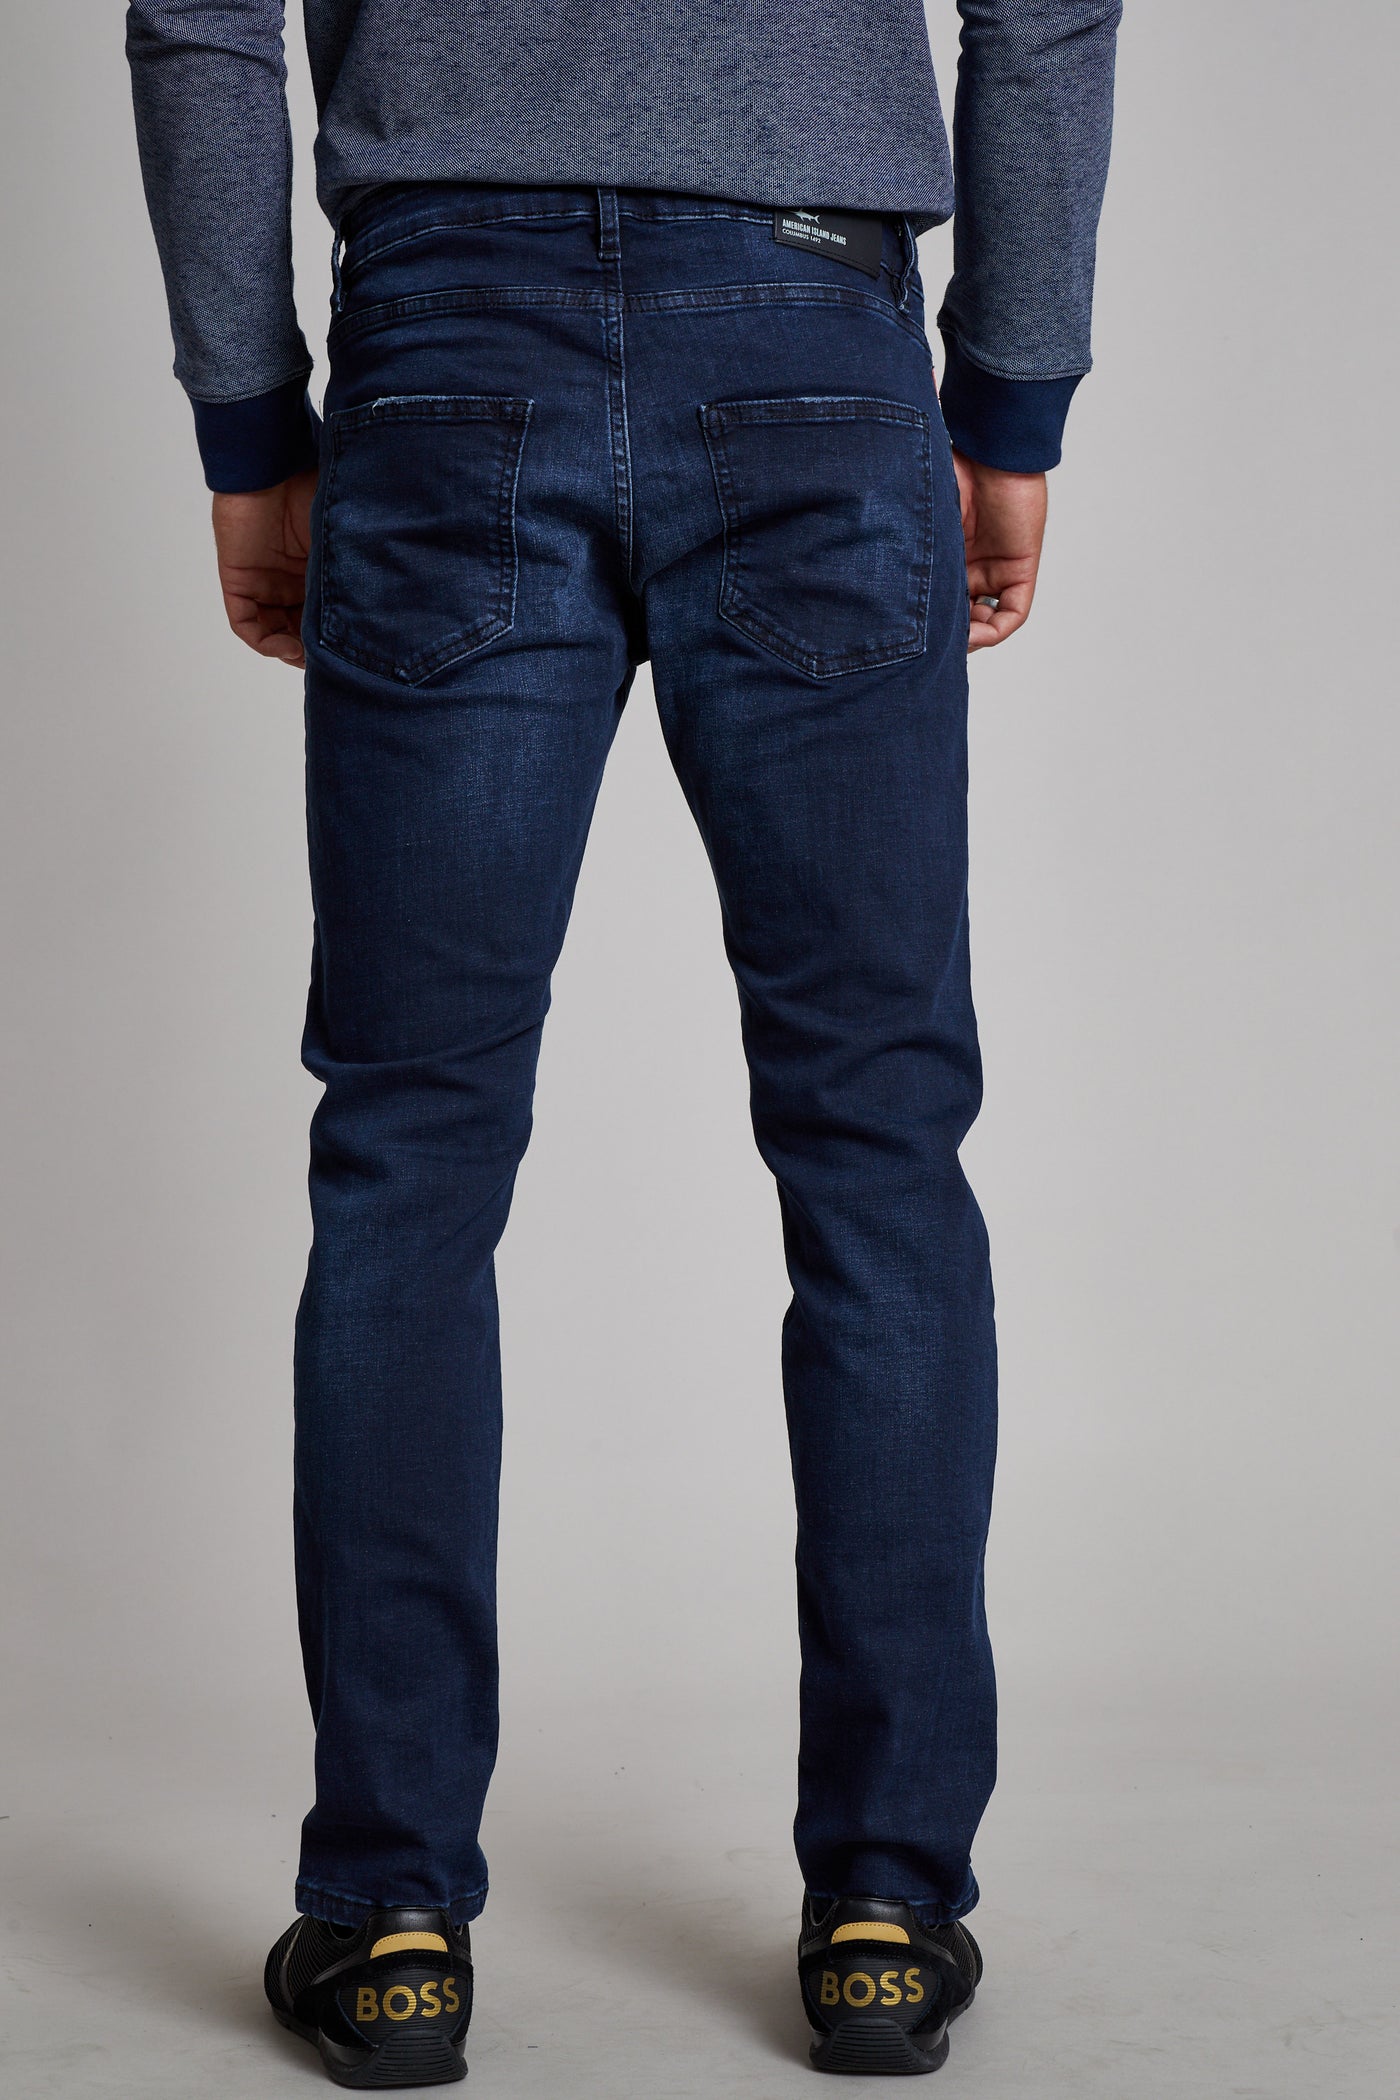 מכנס ג'ינס סלים TU בצבע כחול 1